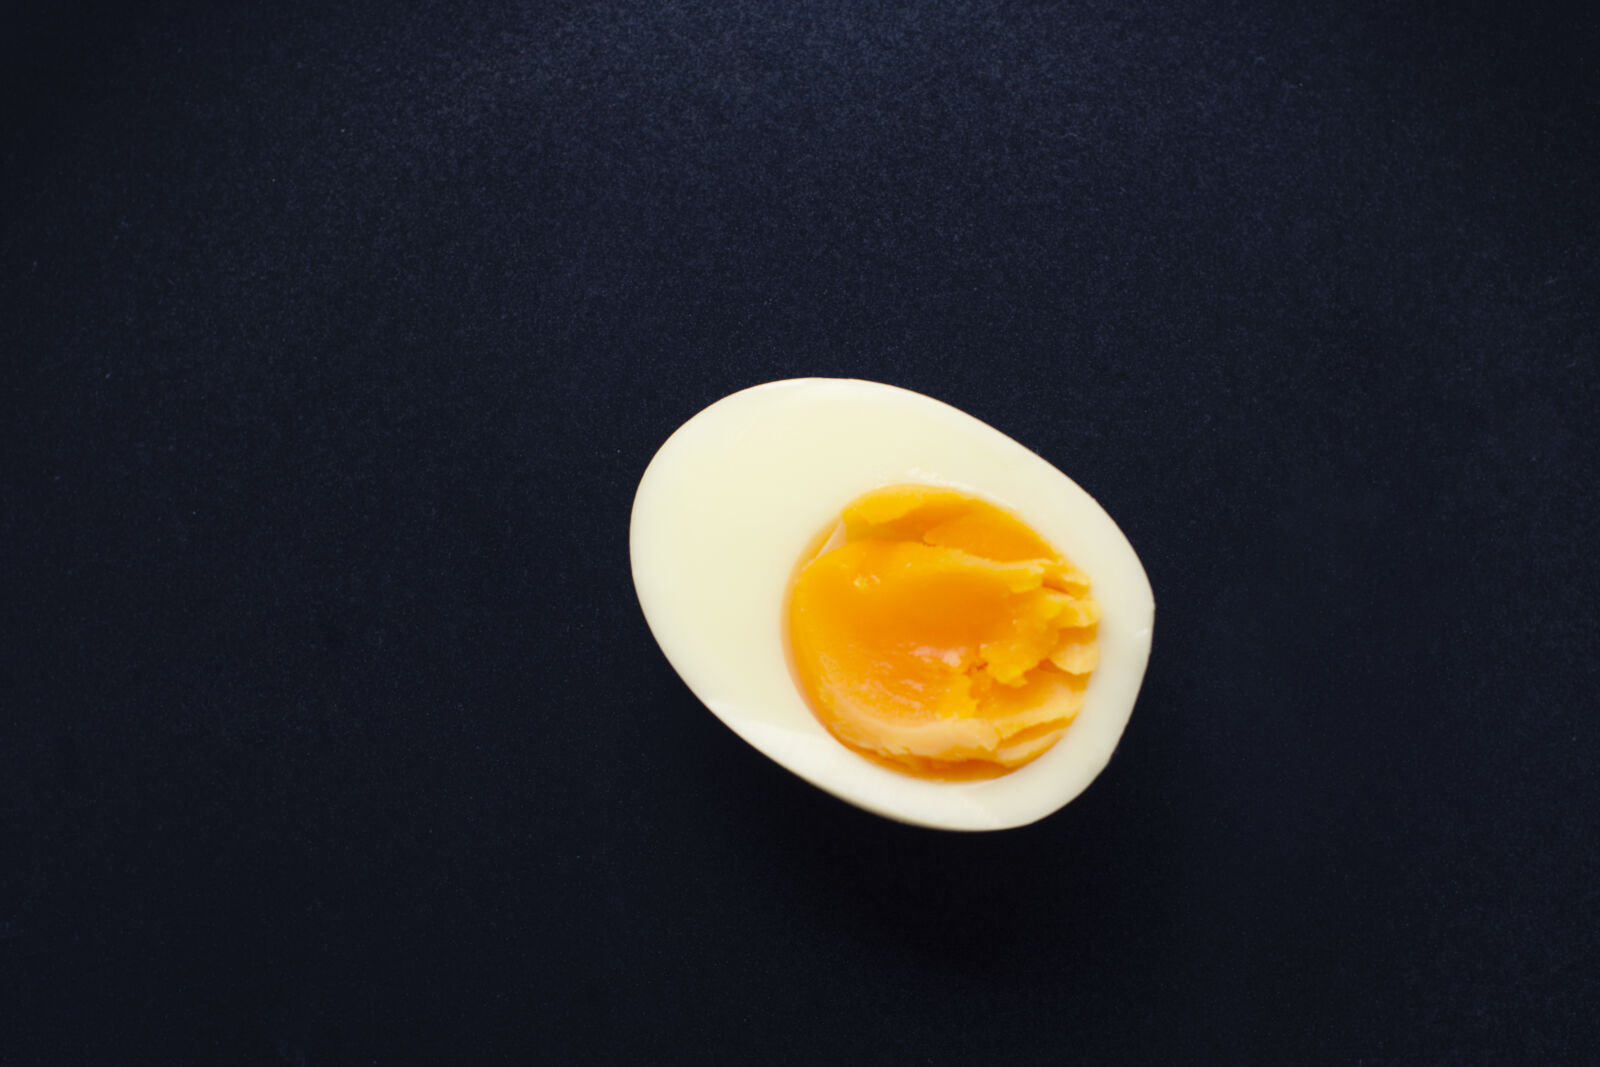 Nikon AF-S Nikkor 50mm F1.4G sample photo. Egg, food, theme, minimalism photography